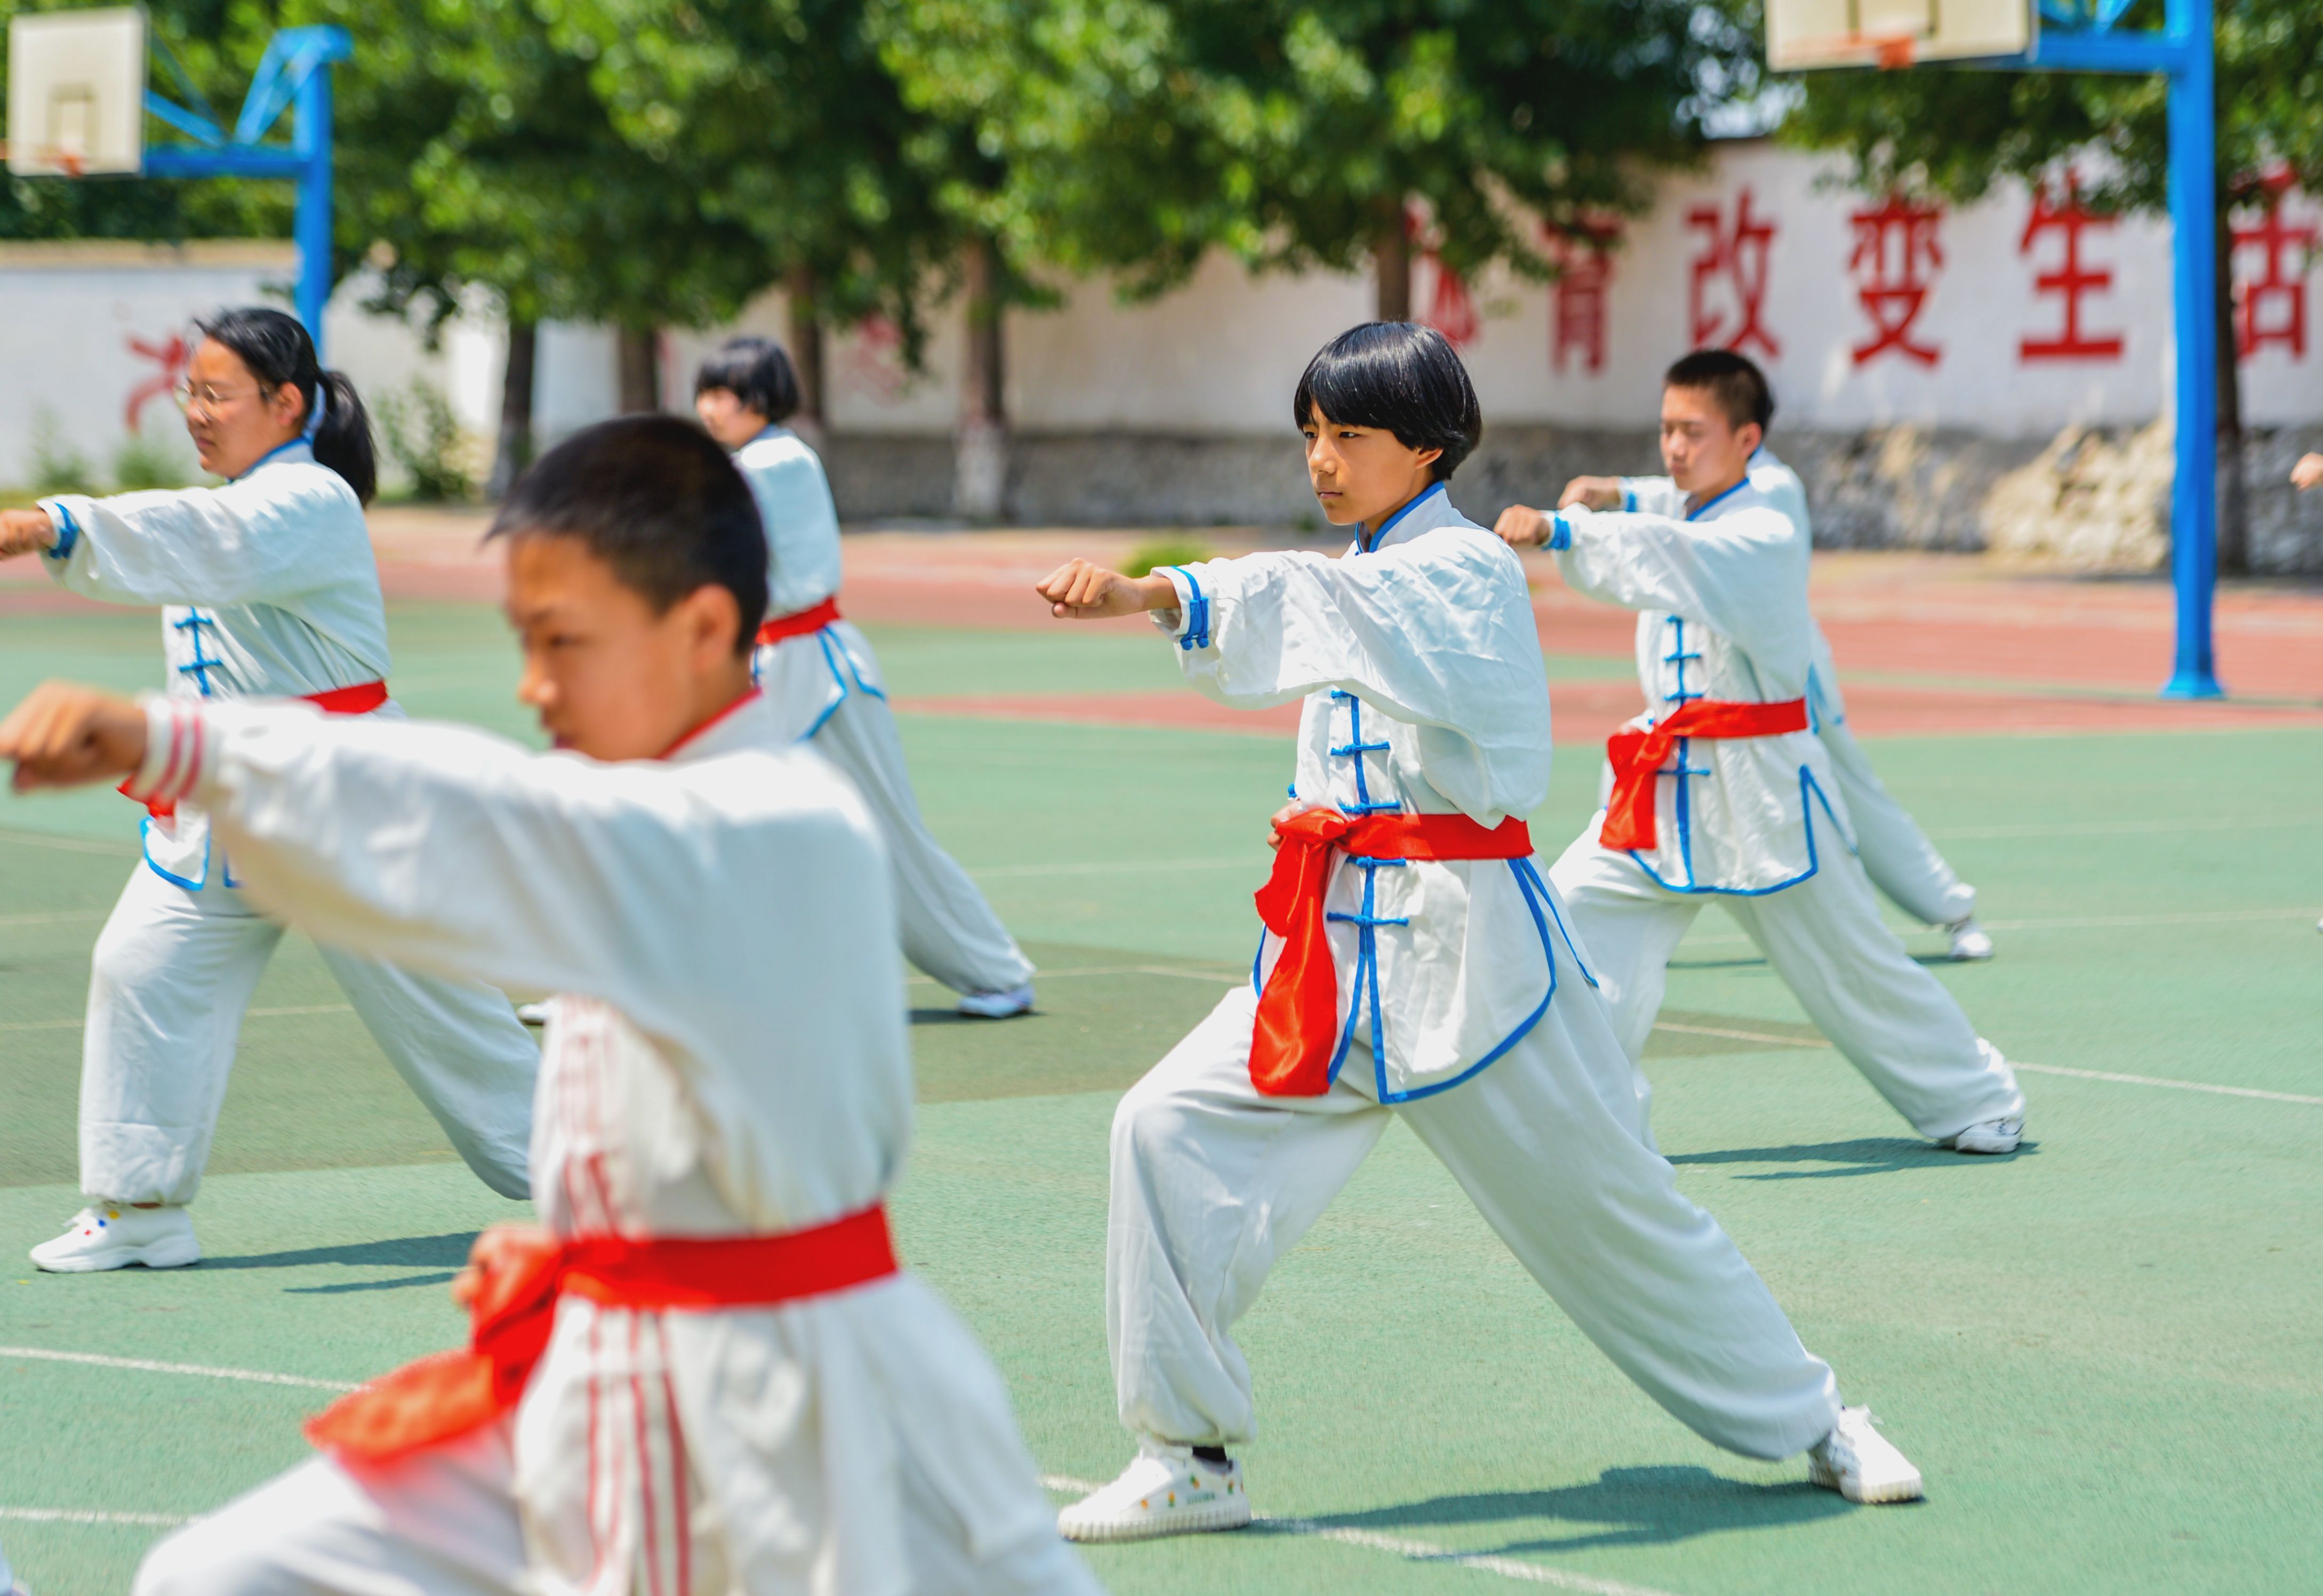 新华社照片,邯郸(河北),2019年7月13日 7月13日,学生们在练习拳法.